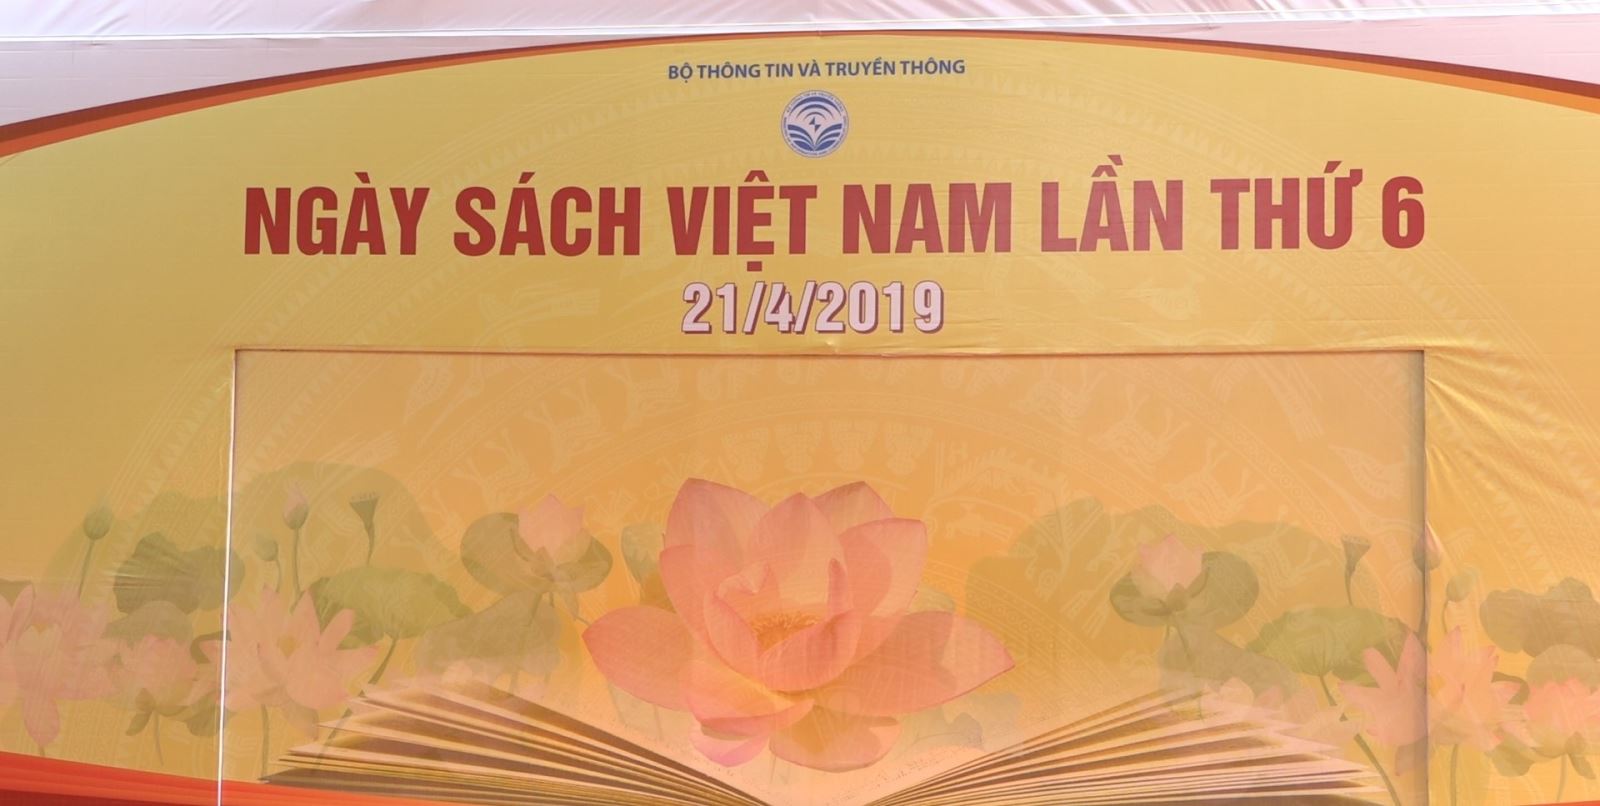 Cập nhật các chương trình khuyến mãi hấp dẫn tại Hội sách Ngày sách Việt Nam 2019